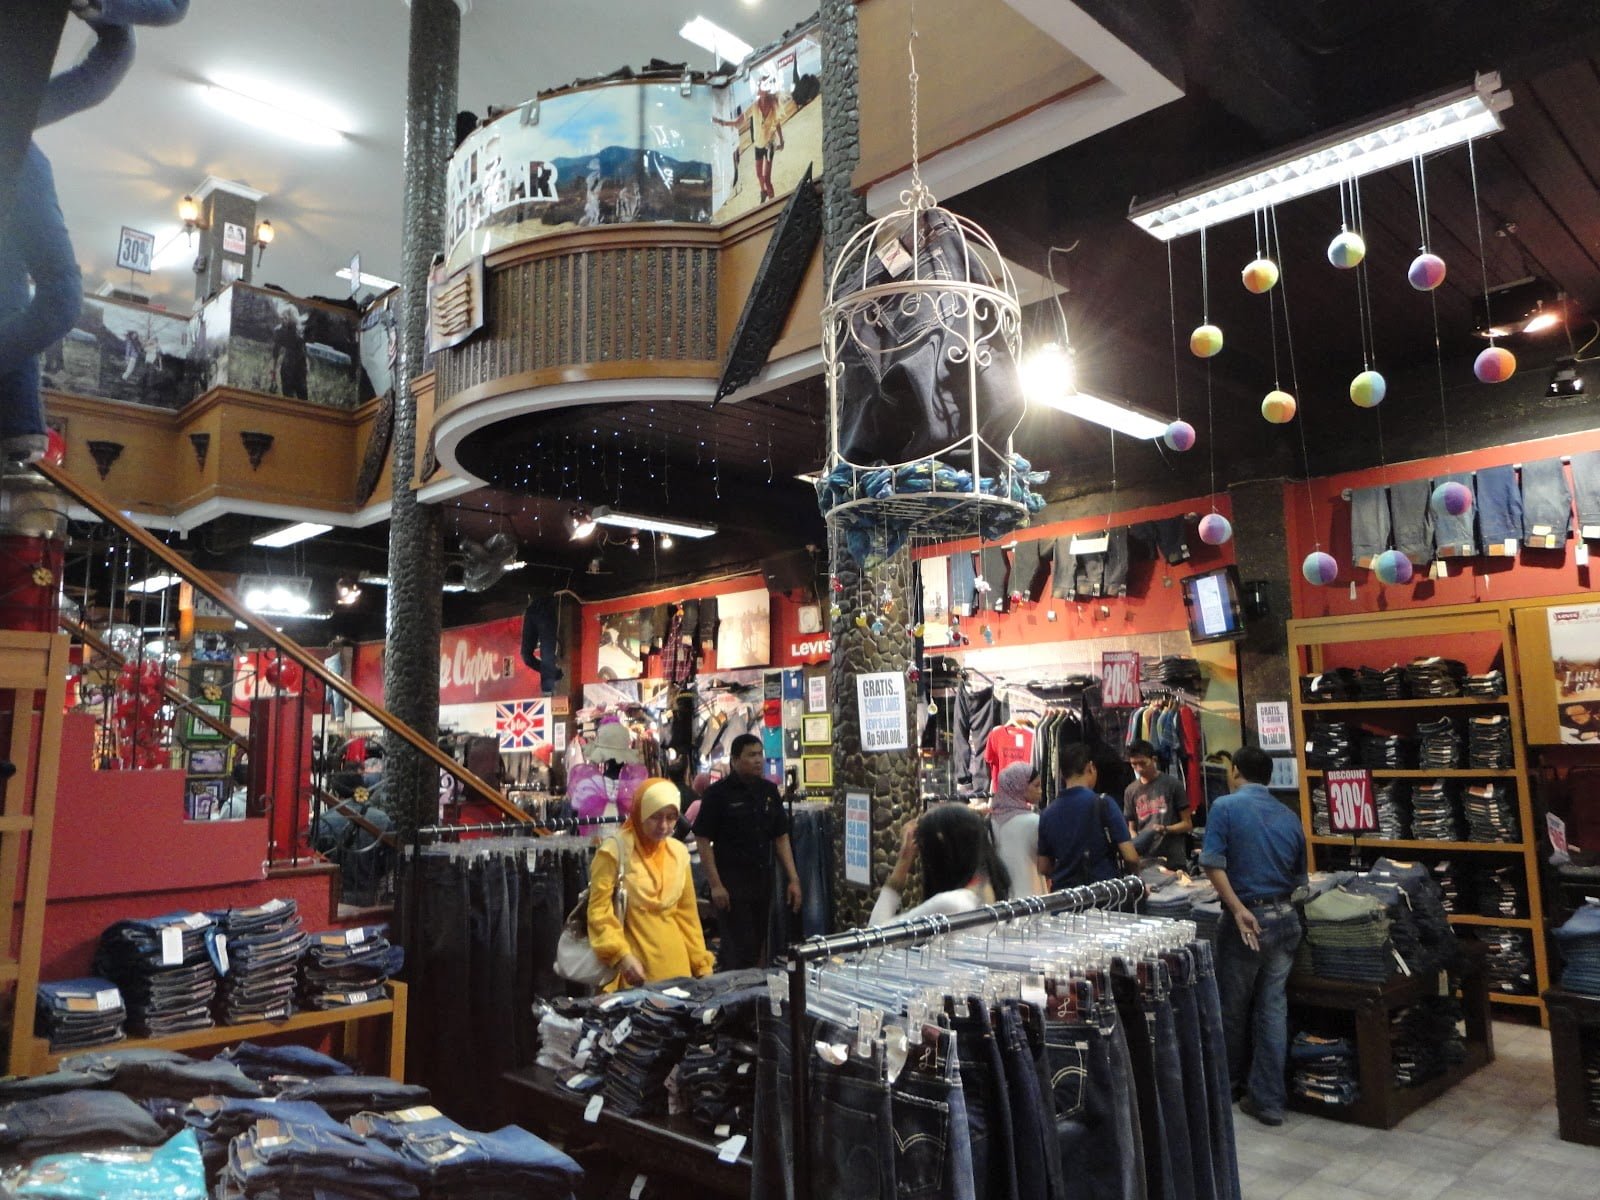  Toko  Tiga Bandung  Surga Belanja Jeans Di  Bandung 